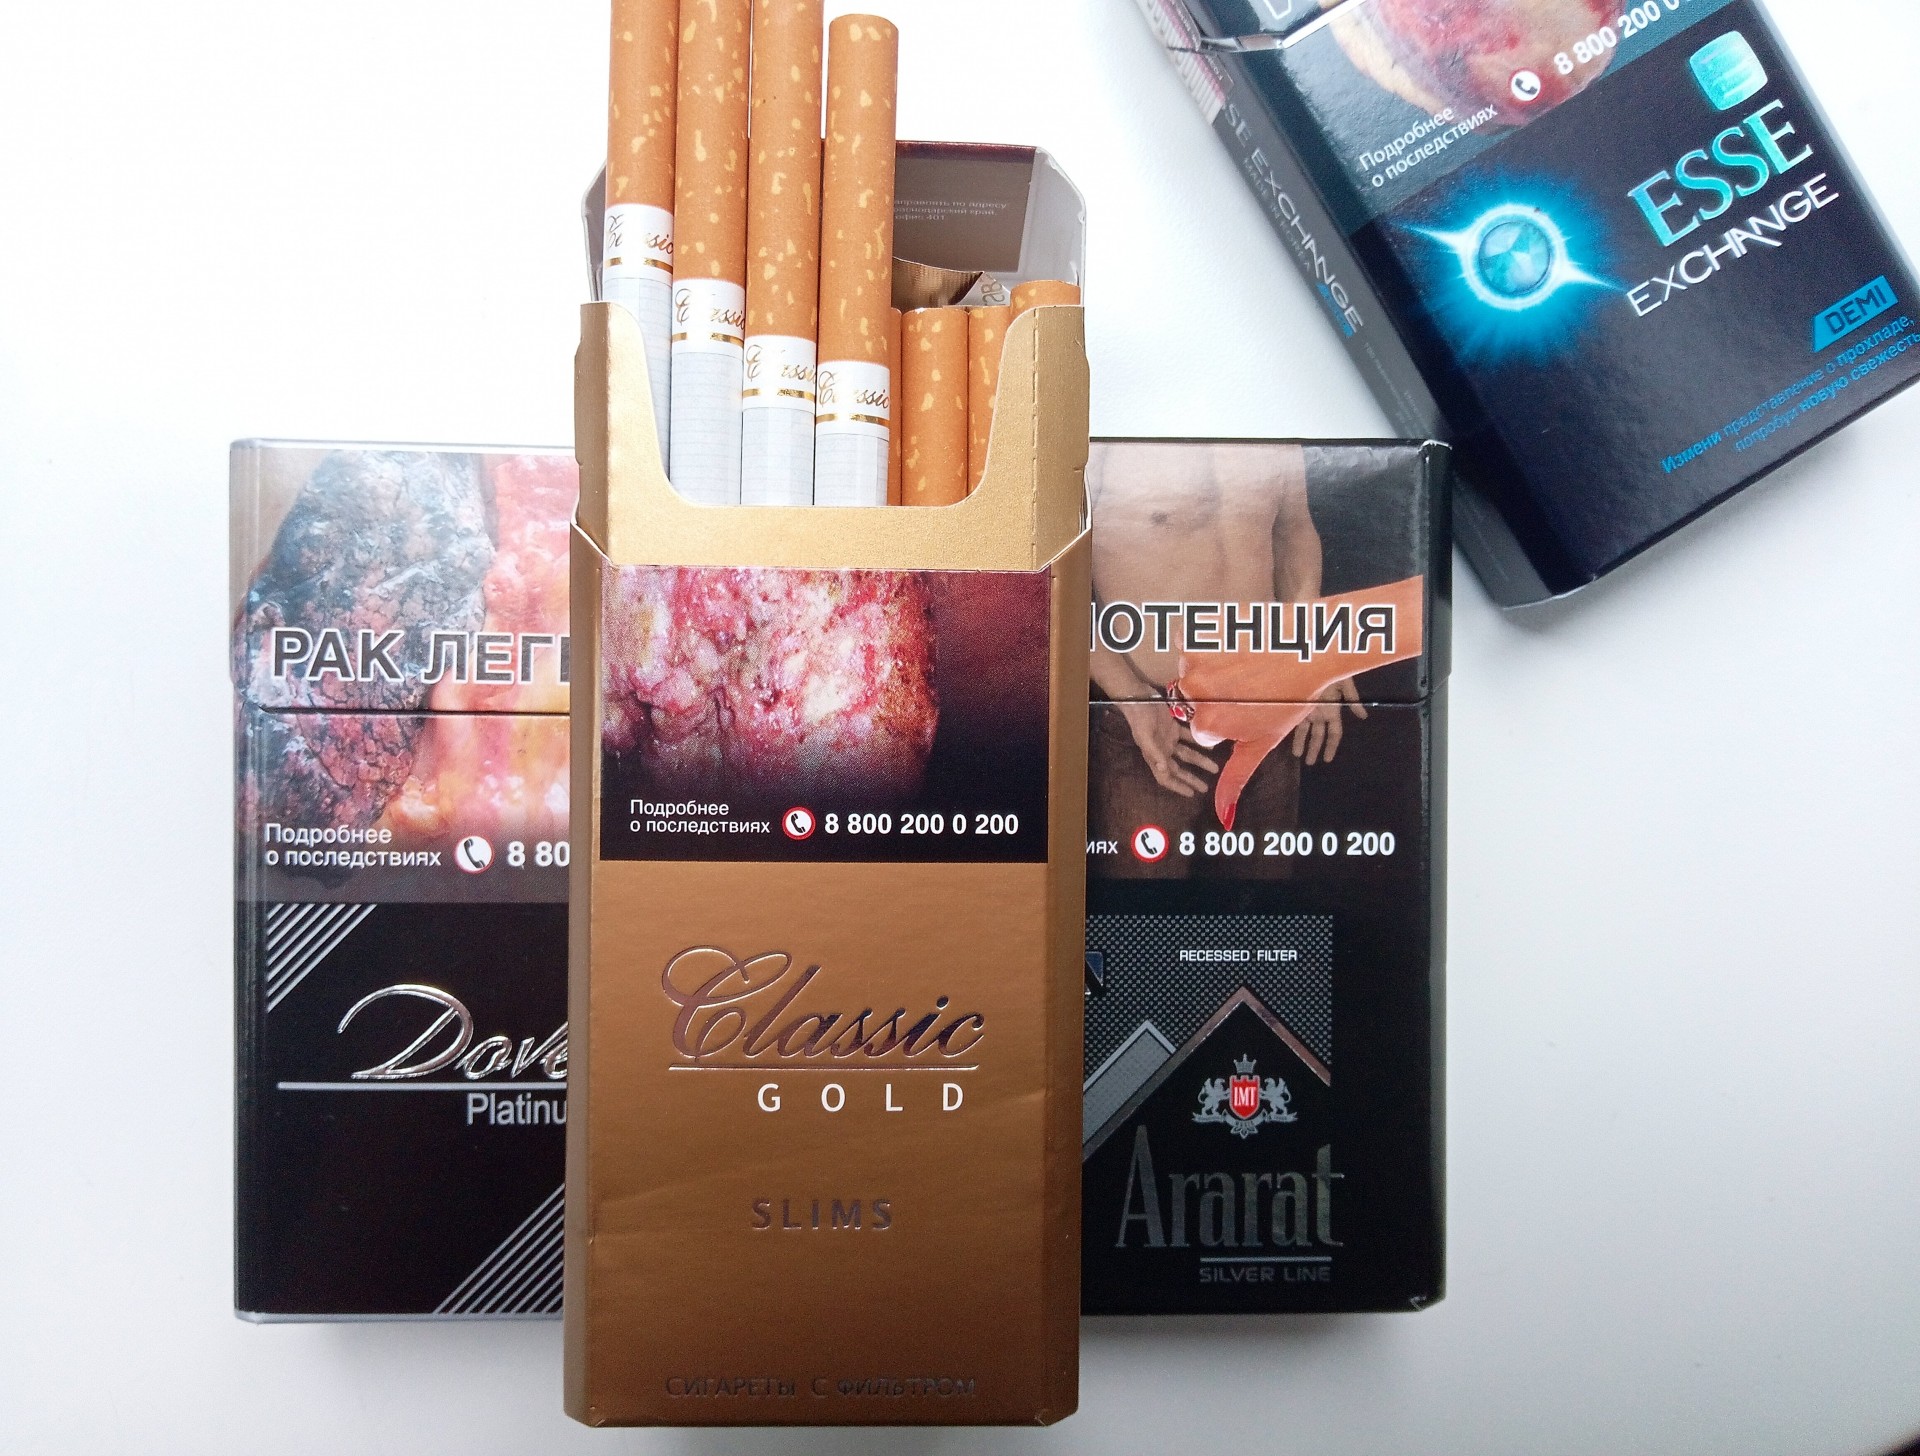 Где купить армянские сигареты. Сигареты Classic Gold (Классик Голд). Армянские сигареты Classic Gold. Сигареты Классик Голд Армения. Сигареты Классик Голд Слимс.